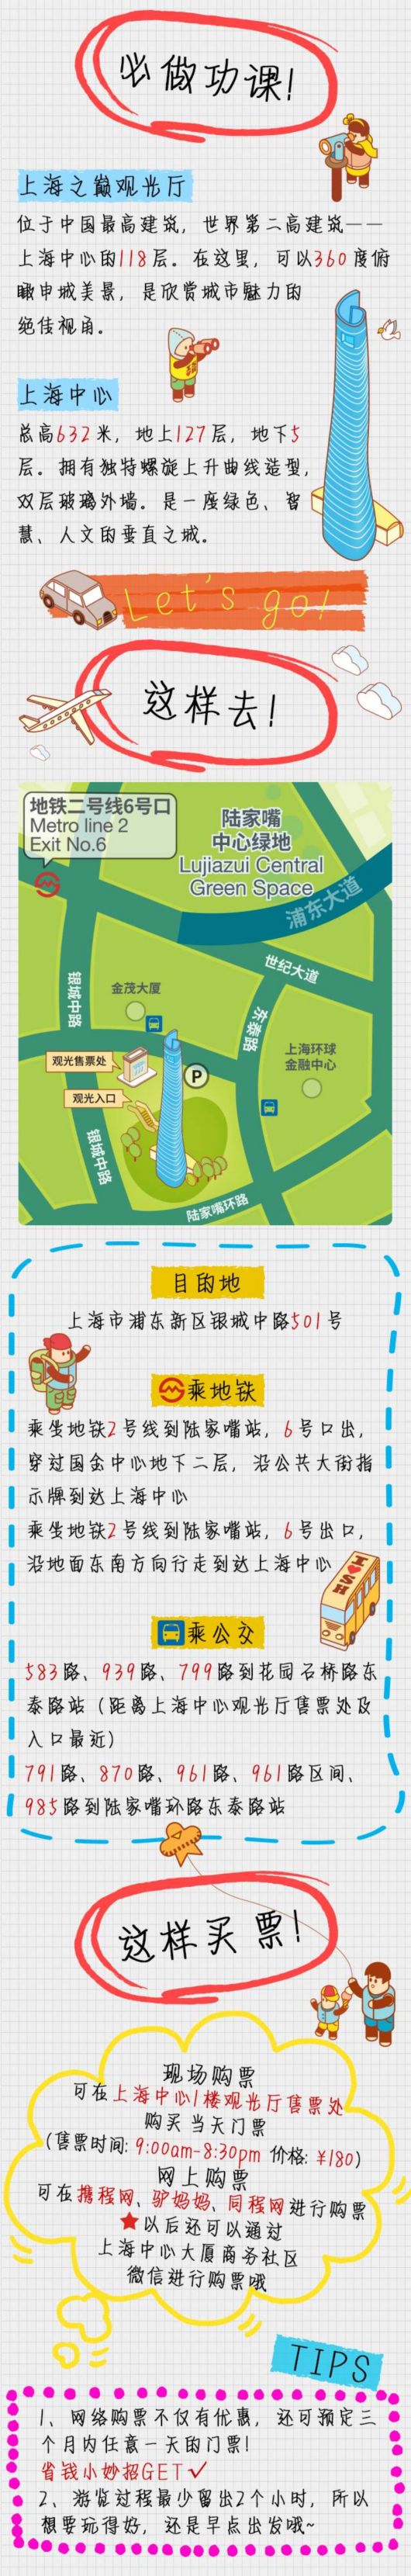 【旅游大文字】上海中心观光游览攻略首次发布